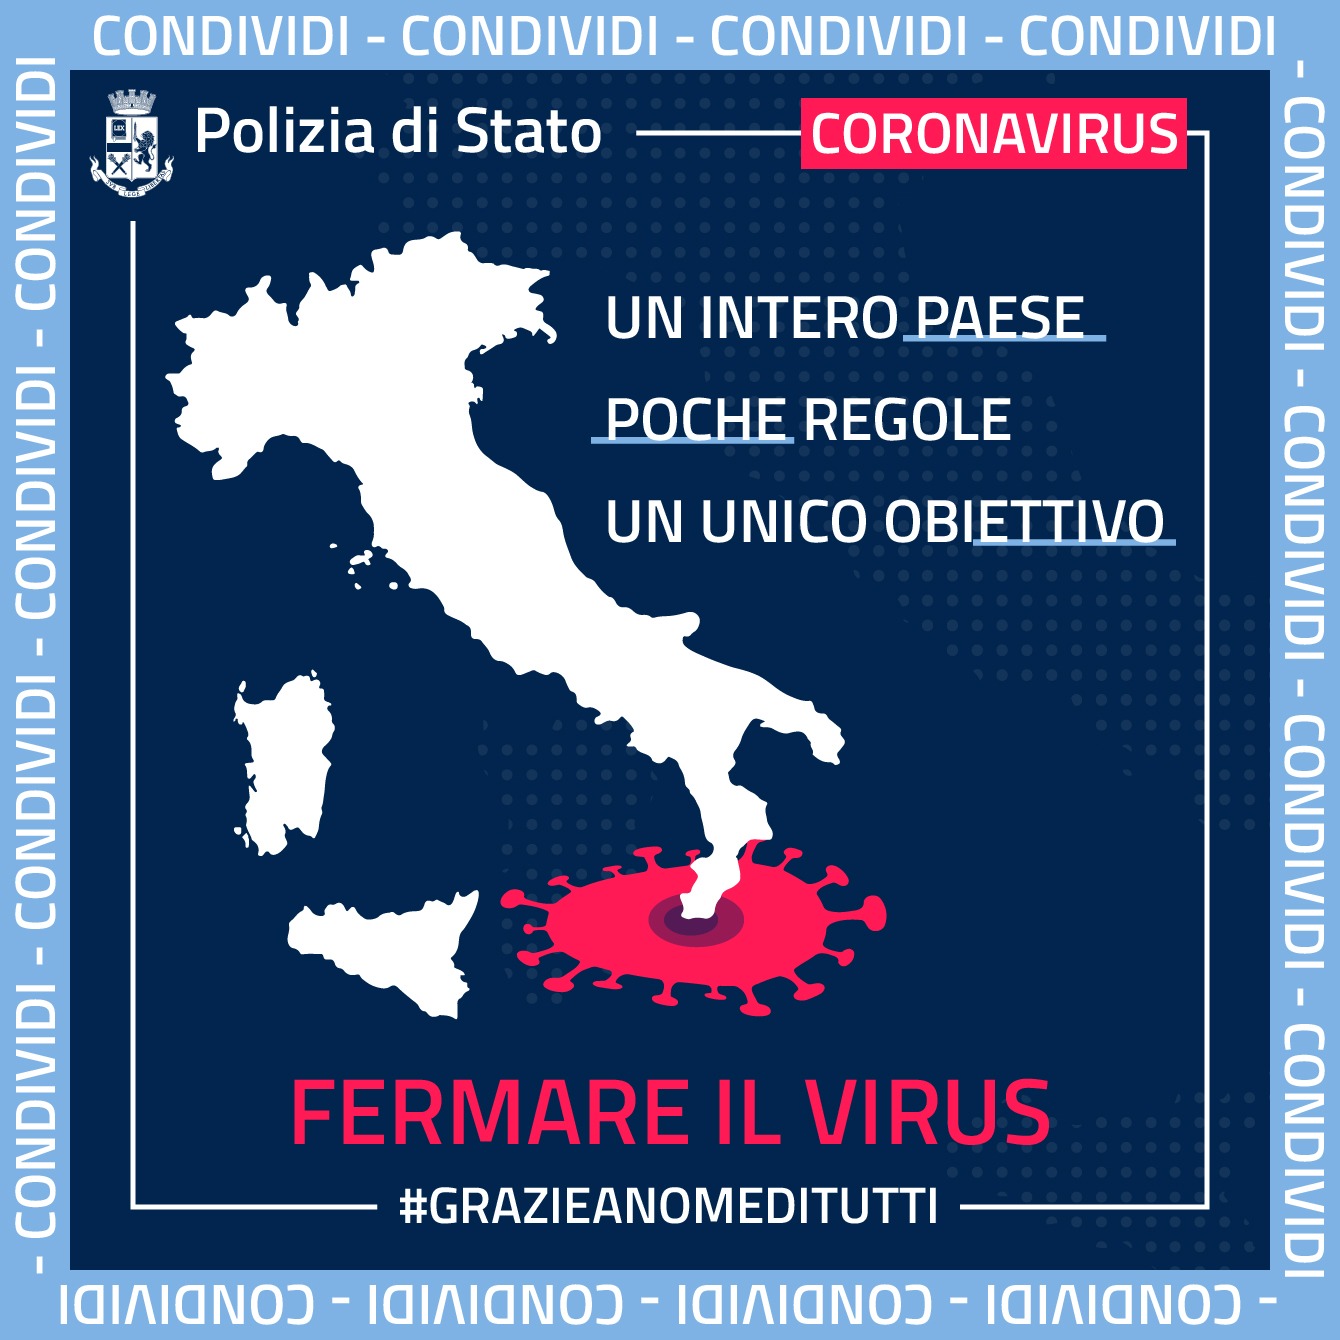 Coronavirus: misure urgenti di contenimento su tutto il territorio nazionale